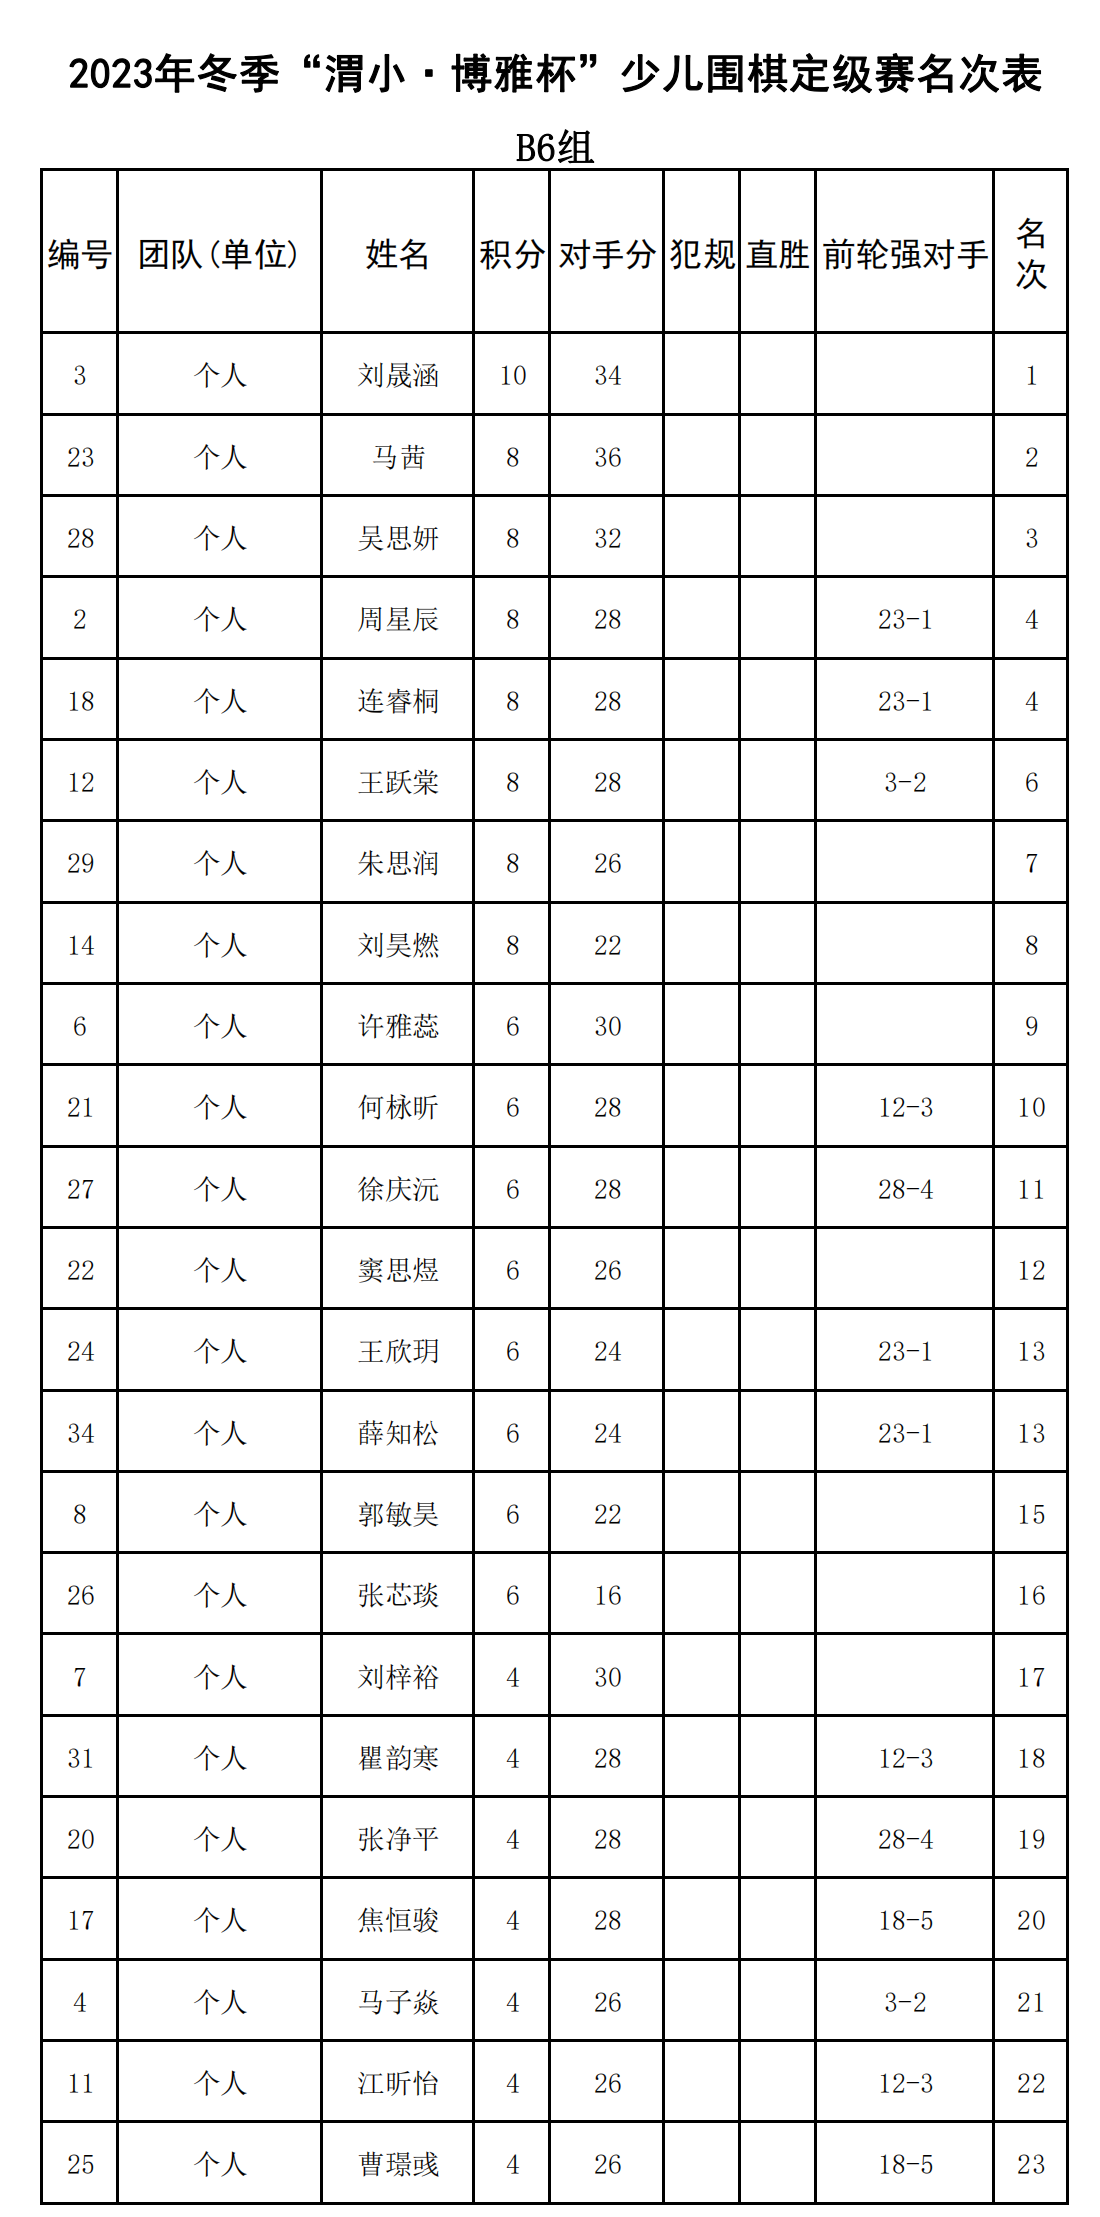 2023年冬季“渭小·博雅杯”少儿围棋定级赛B6组(名次表)_00.png